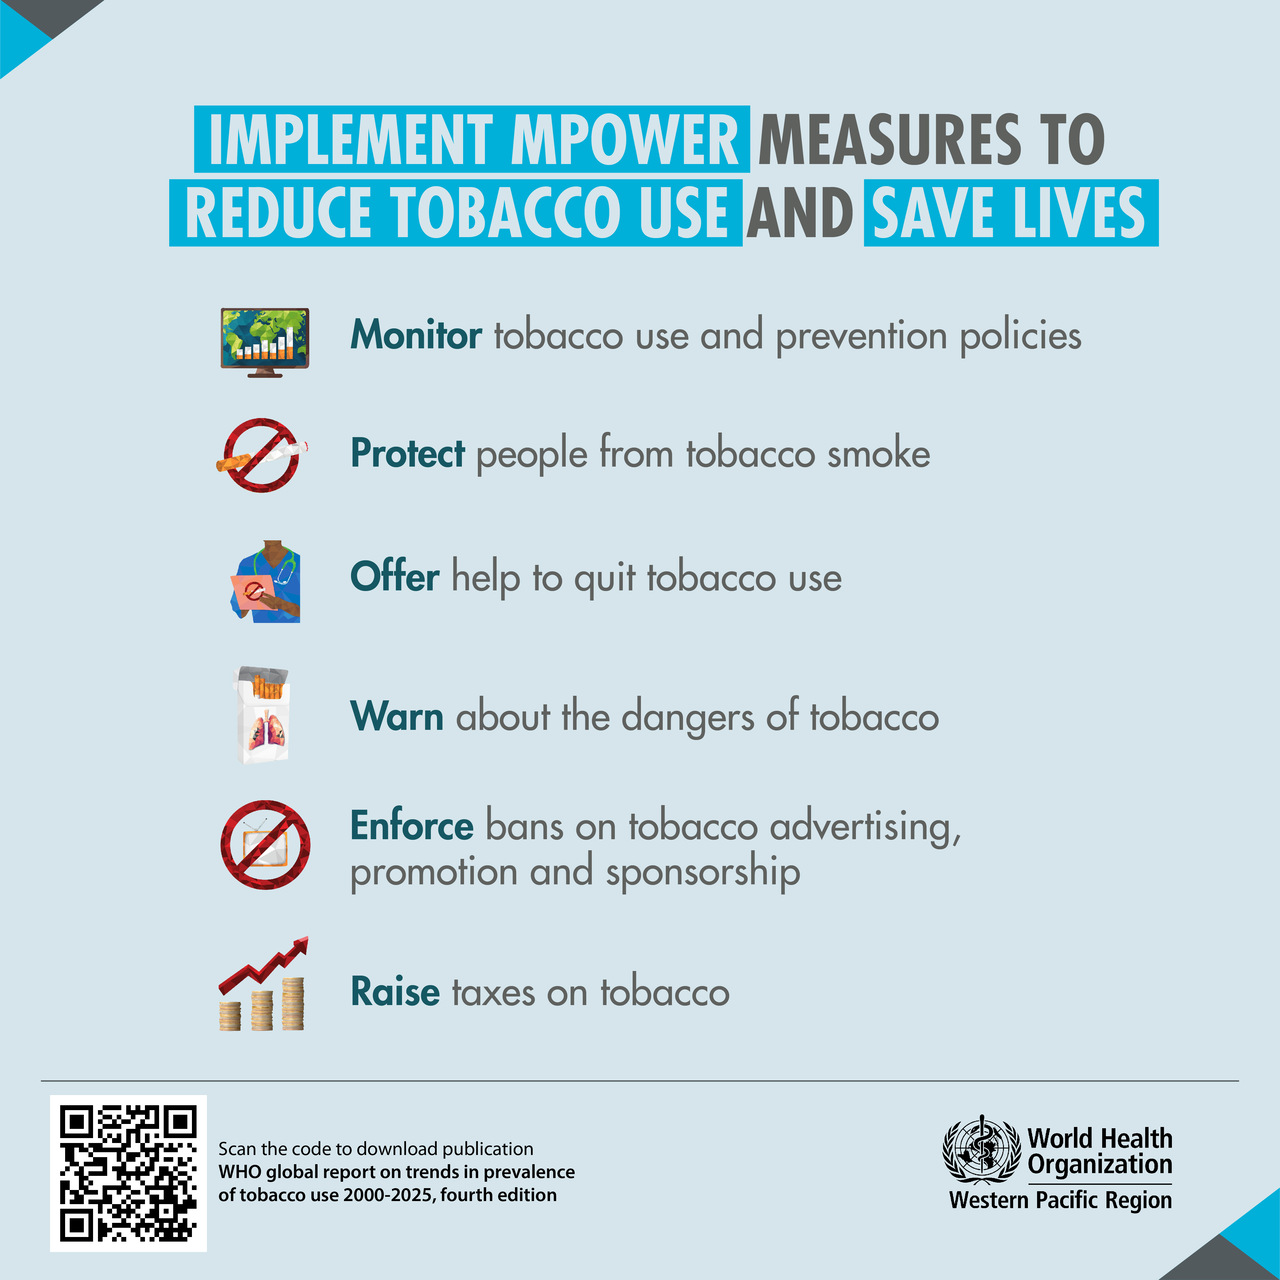 Tubakas: suitsetamine mürgitab endiselt meie planeeti, kuid ülemaailmsed meetmed selle nähtuse vastu võitlemiseks toimivad